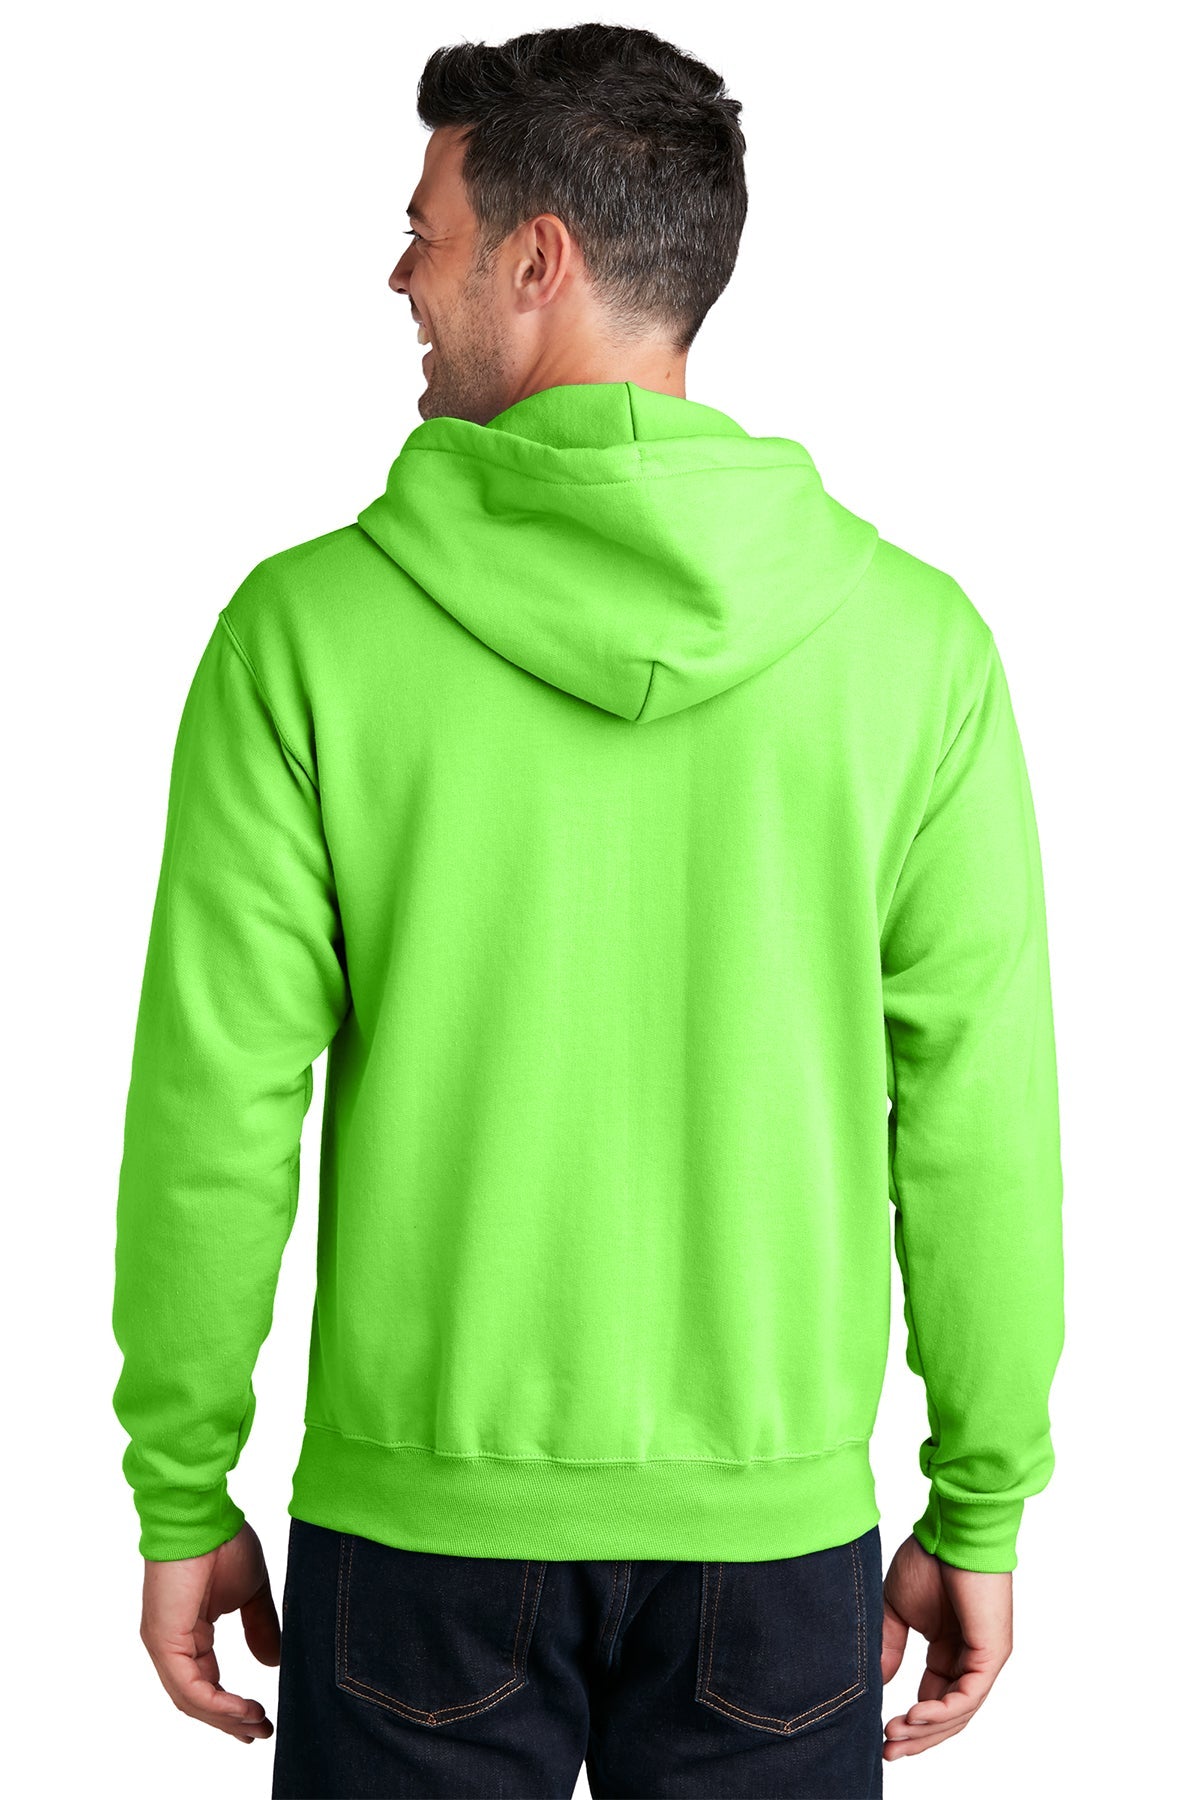 Port & Company Core Fleece Custom Zip Hoodies, Neon Green